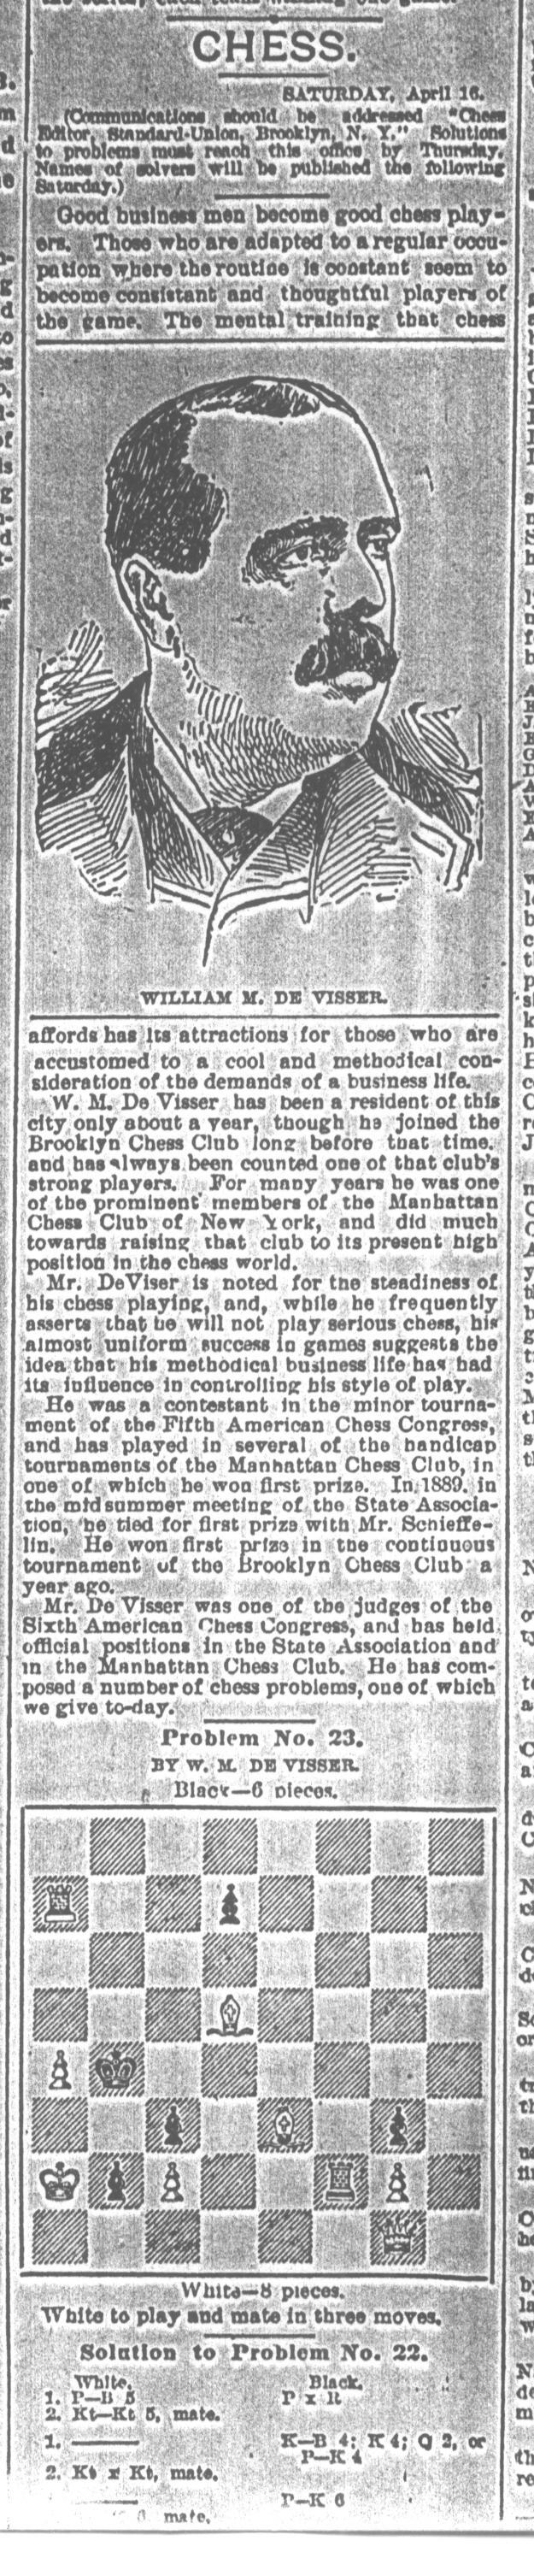 1892.04.16-01 Brooklyn Daily Standard-Union.jpg